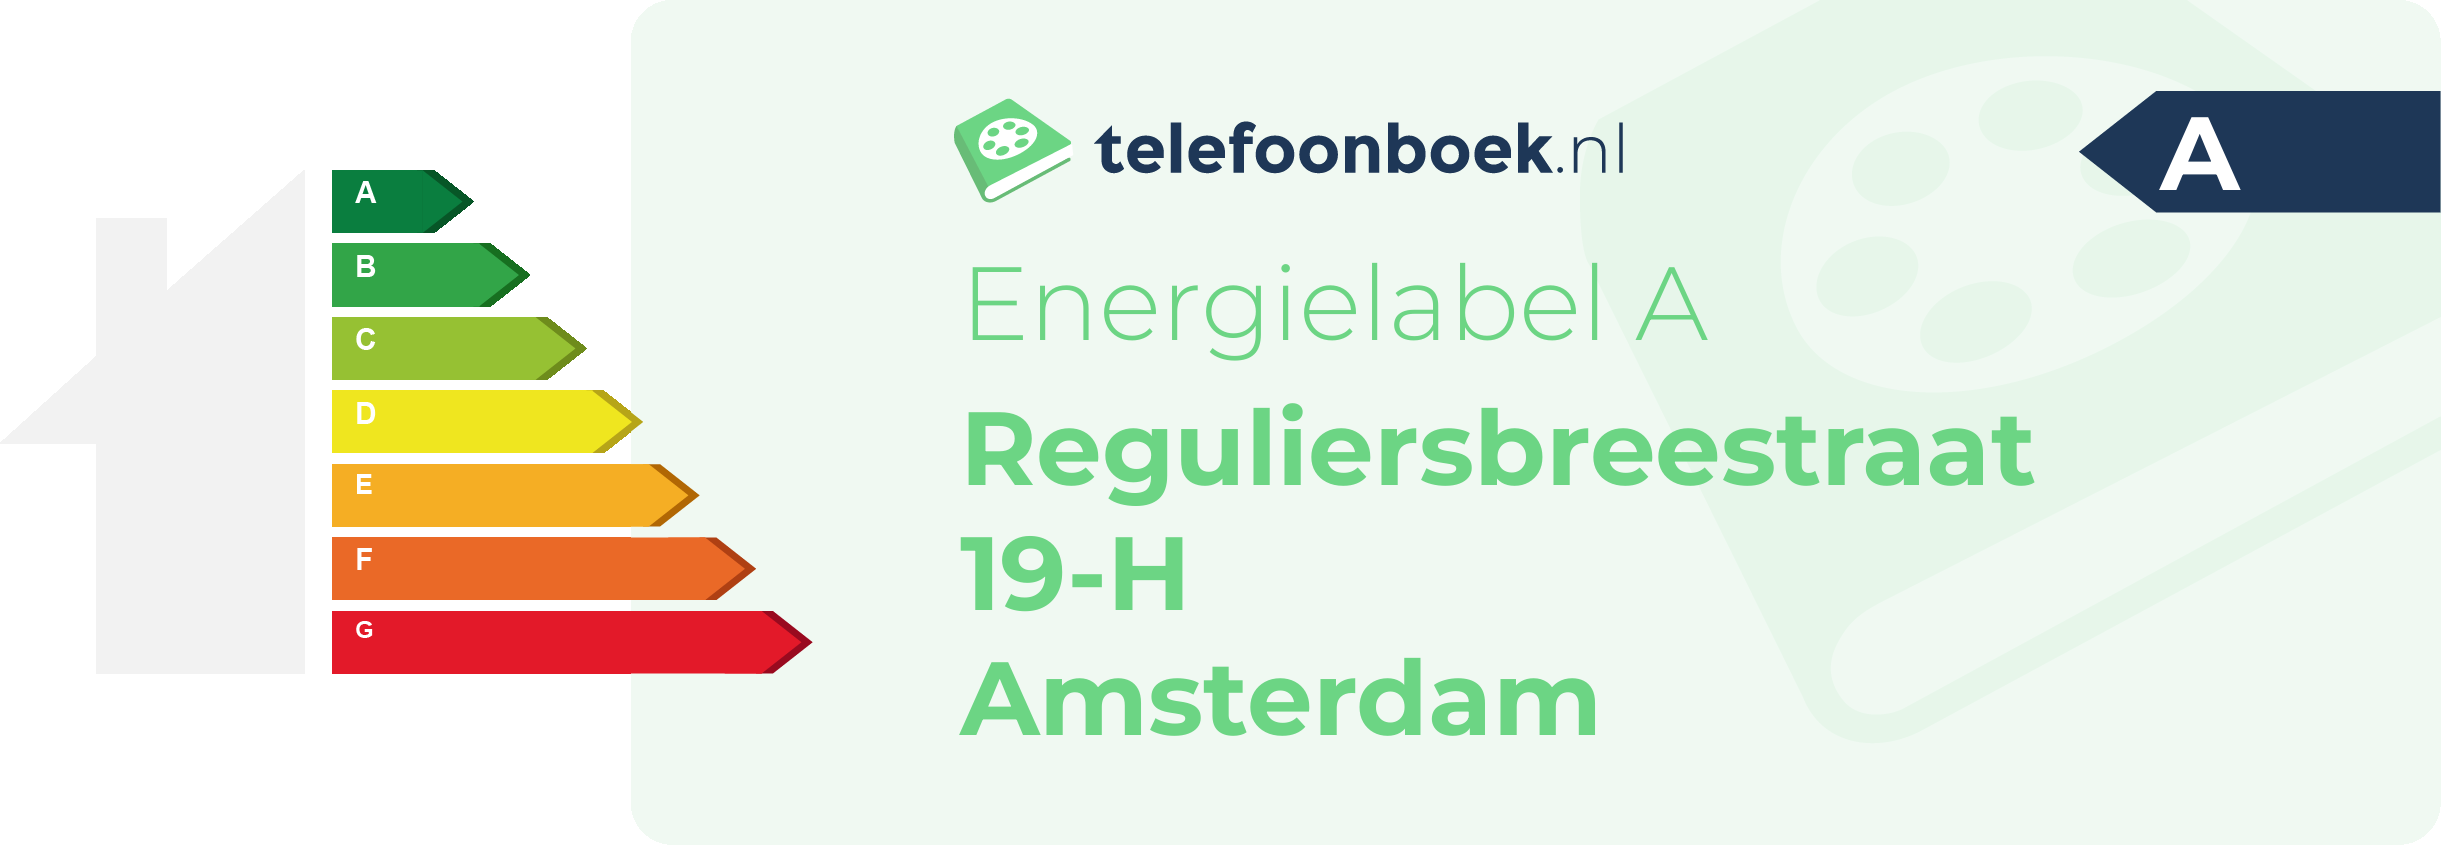 Energielabel Reguliersbreestraat 19-H Amsterdam